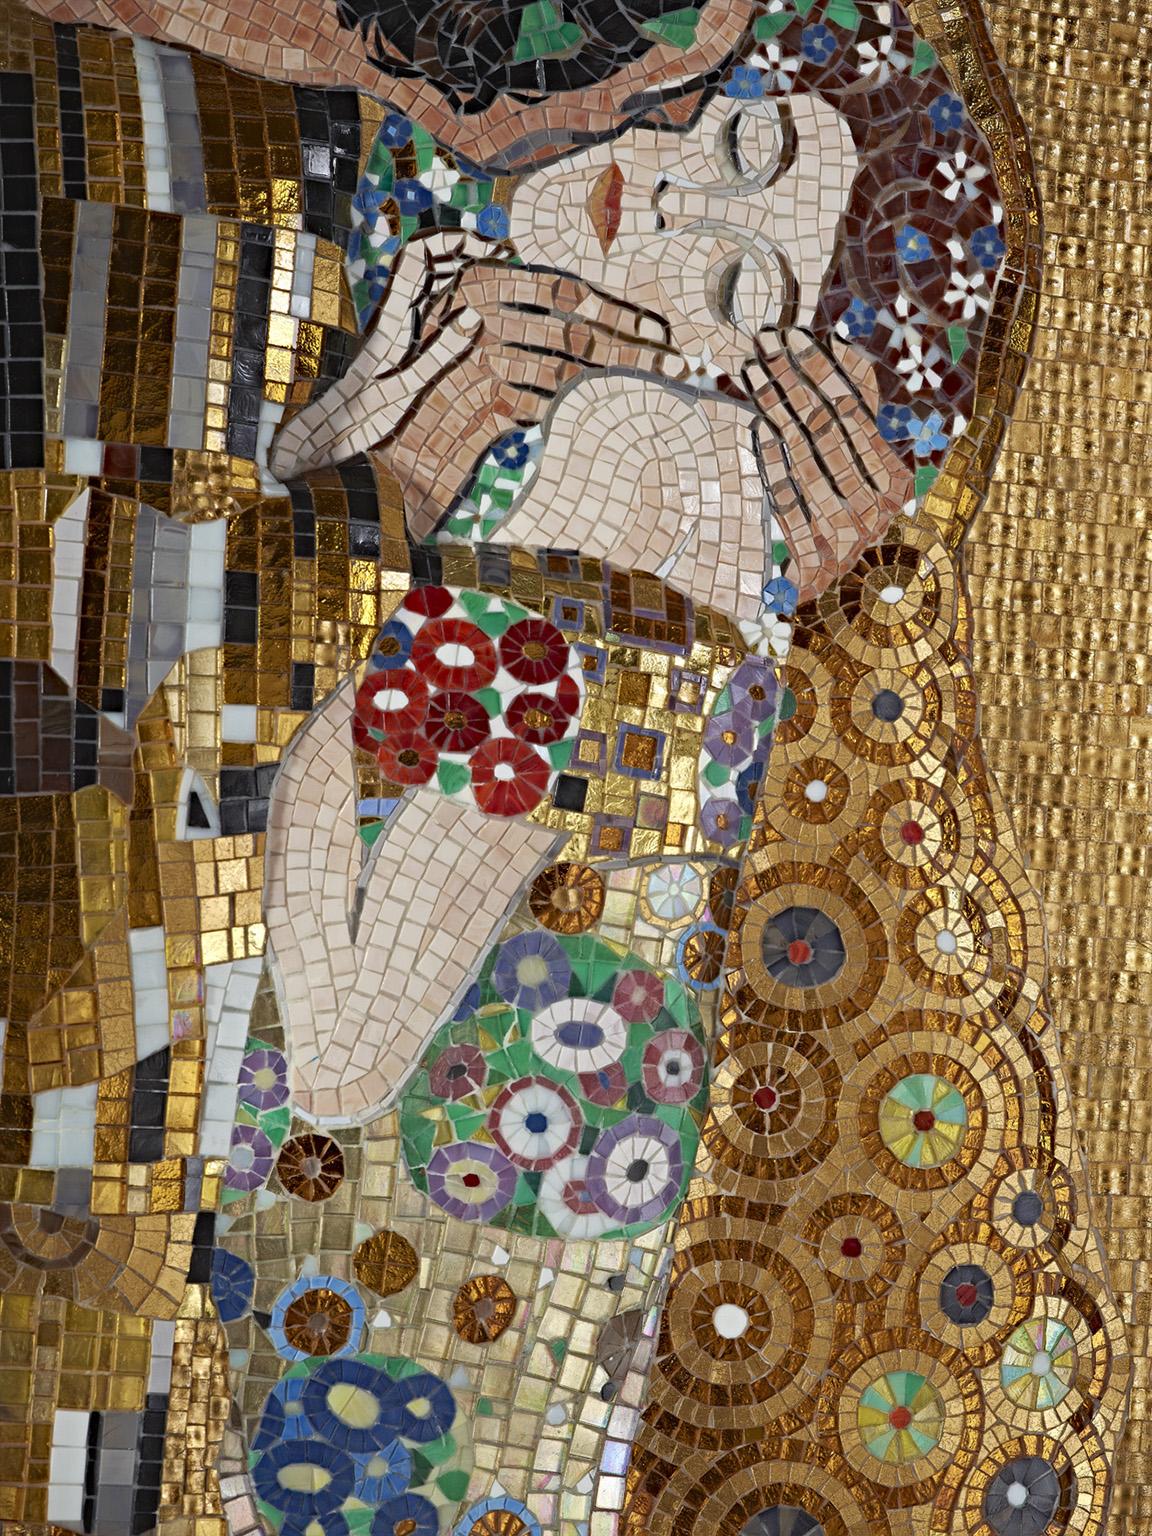 Die Herstellung eines künstlerischen Mosaiks, ein Design von unvergleichlicher Schönheit, die Erfindung des 